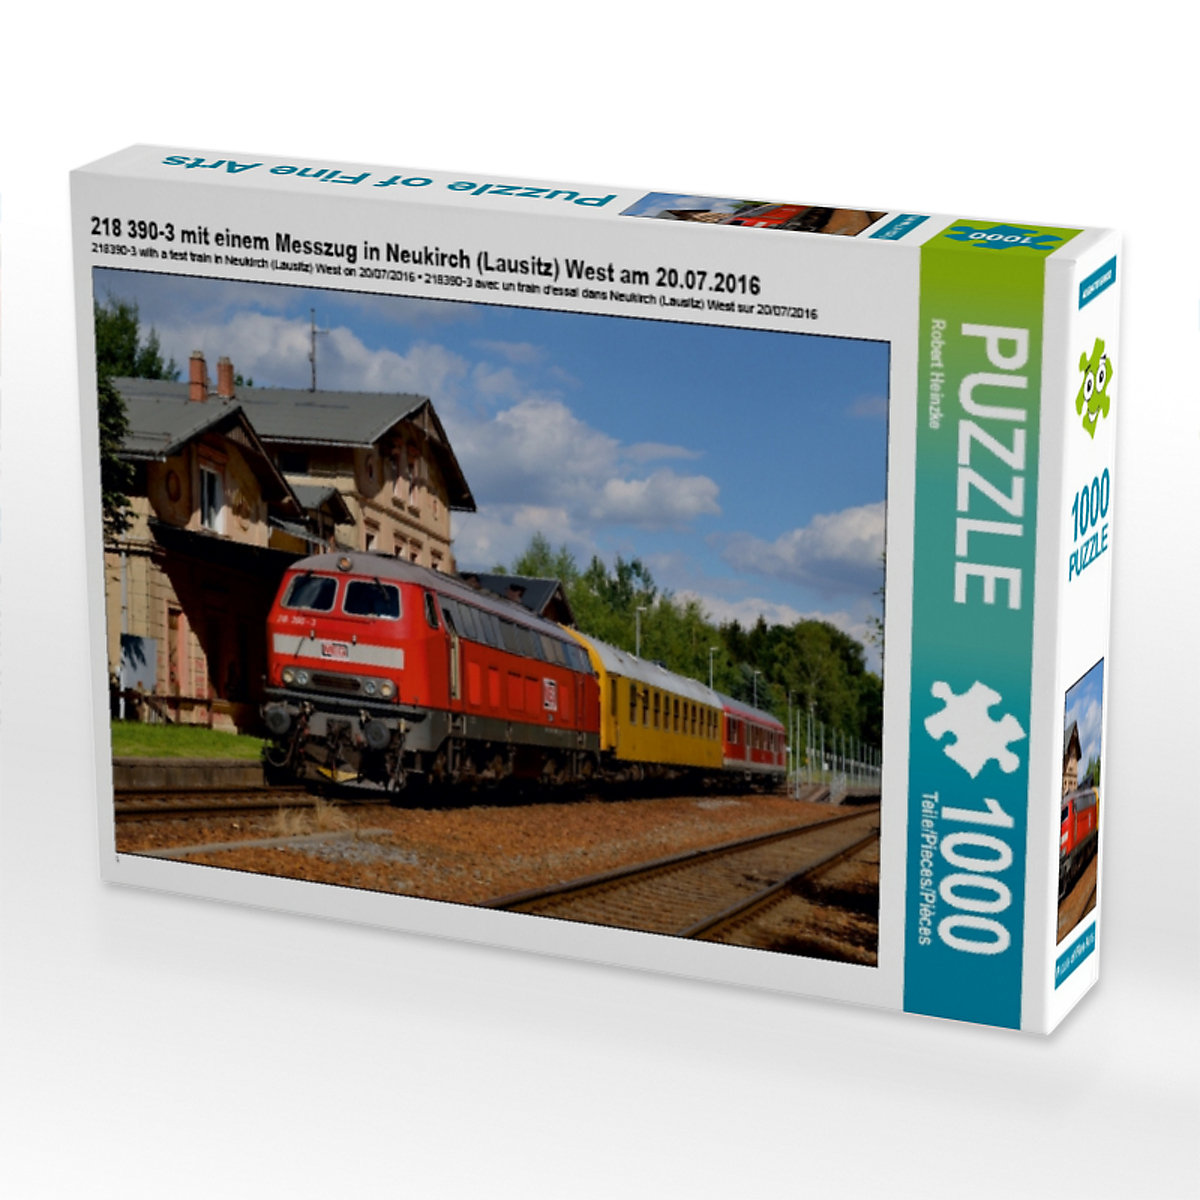 CALVENDO® Puzzle CALVENDO Puzzle 218 390-3 mit einem Messzug in Neukirch (Lausitz) West am 20.07.2016 1000 Teile Foto-Puzzle für glückliche Stunden